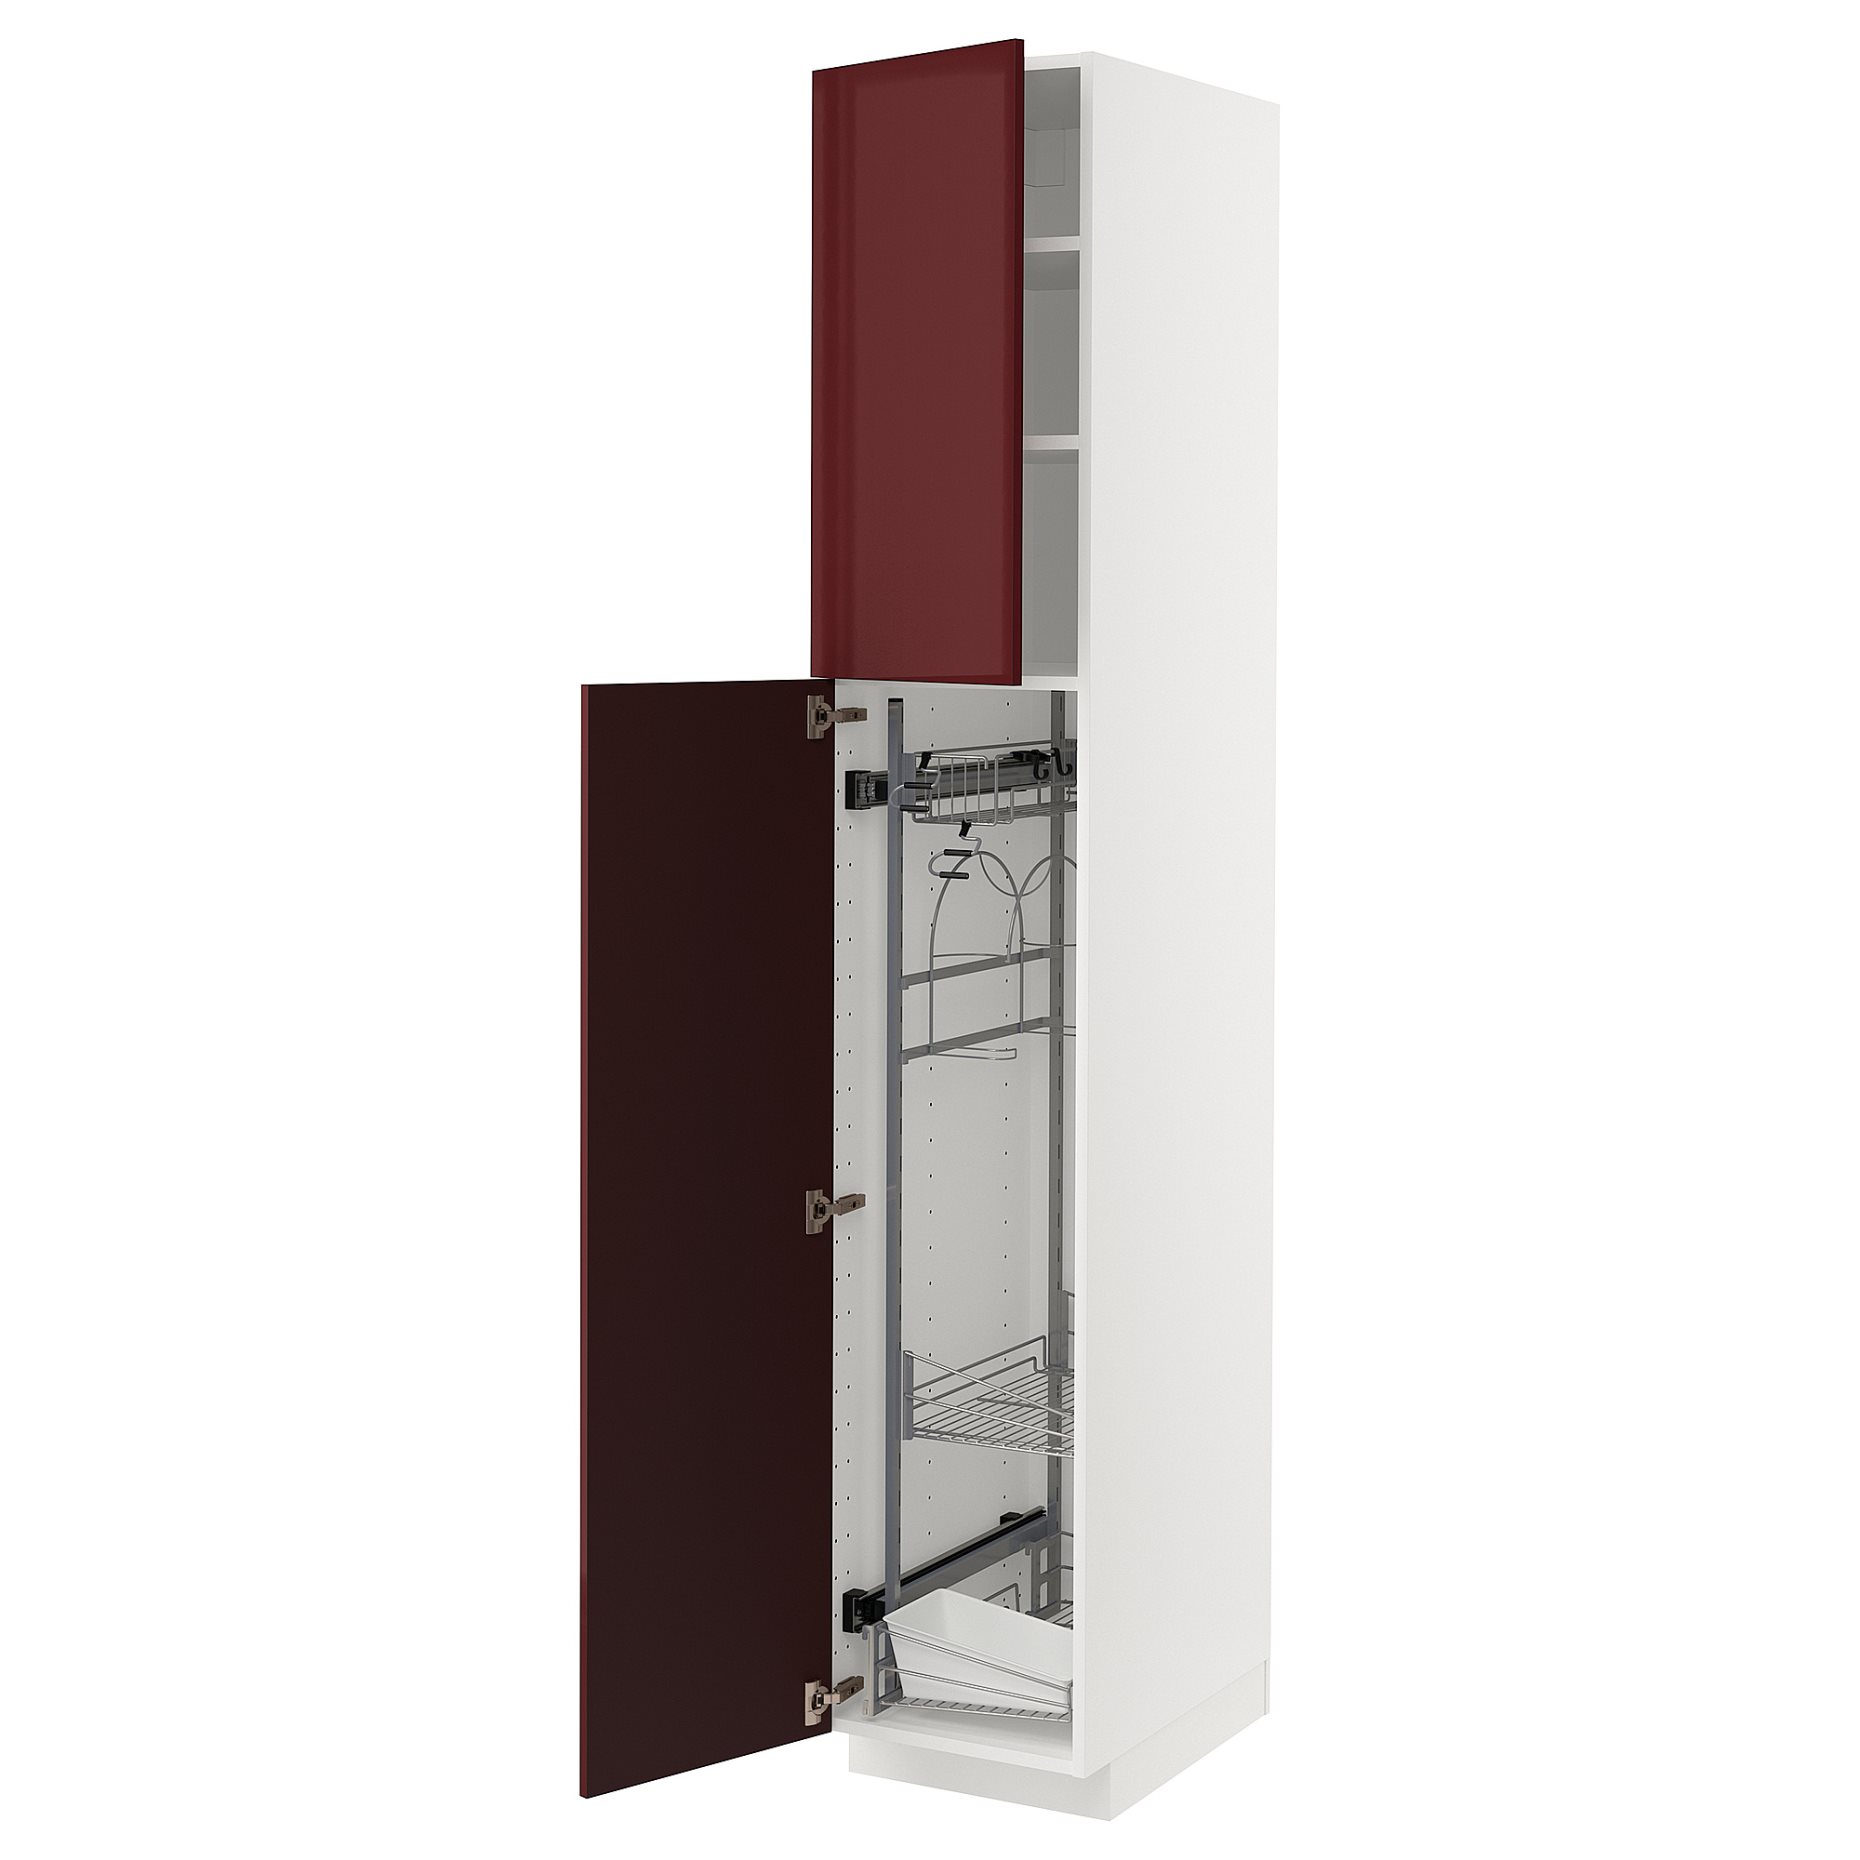 METOD, ψηλό ντουλάπι με εσωτερικά εξάρτηματα για τα είδη καθαρισμού, 40x60x220 cm, 094.563.40